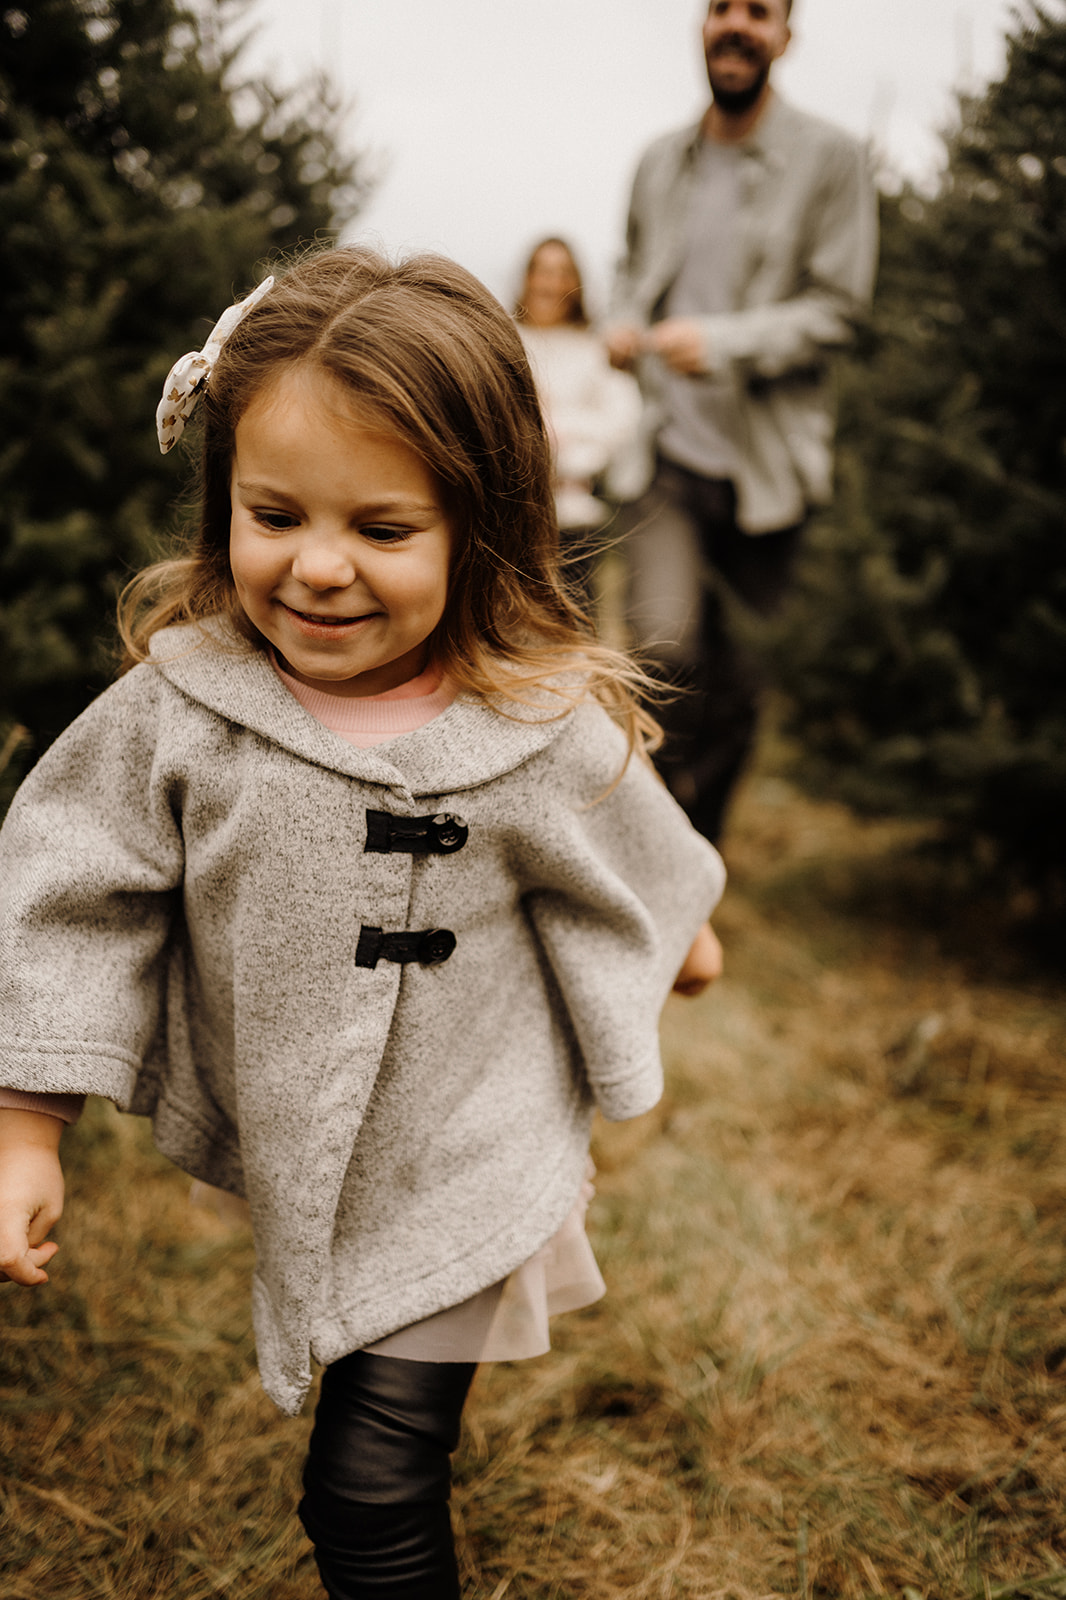 A little girl running between Christmas Trees.